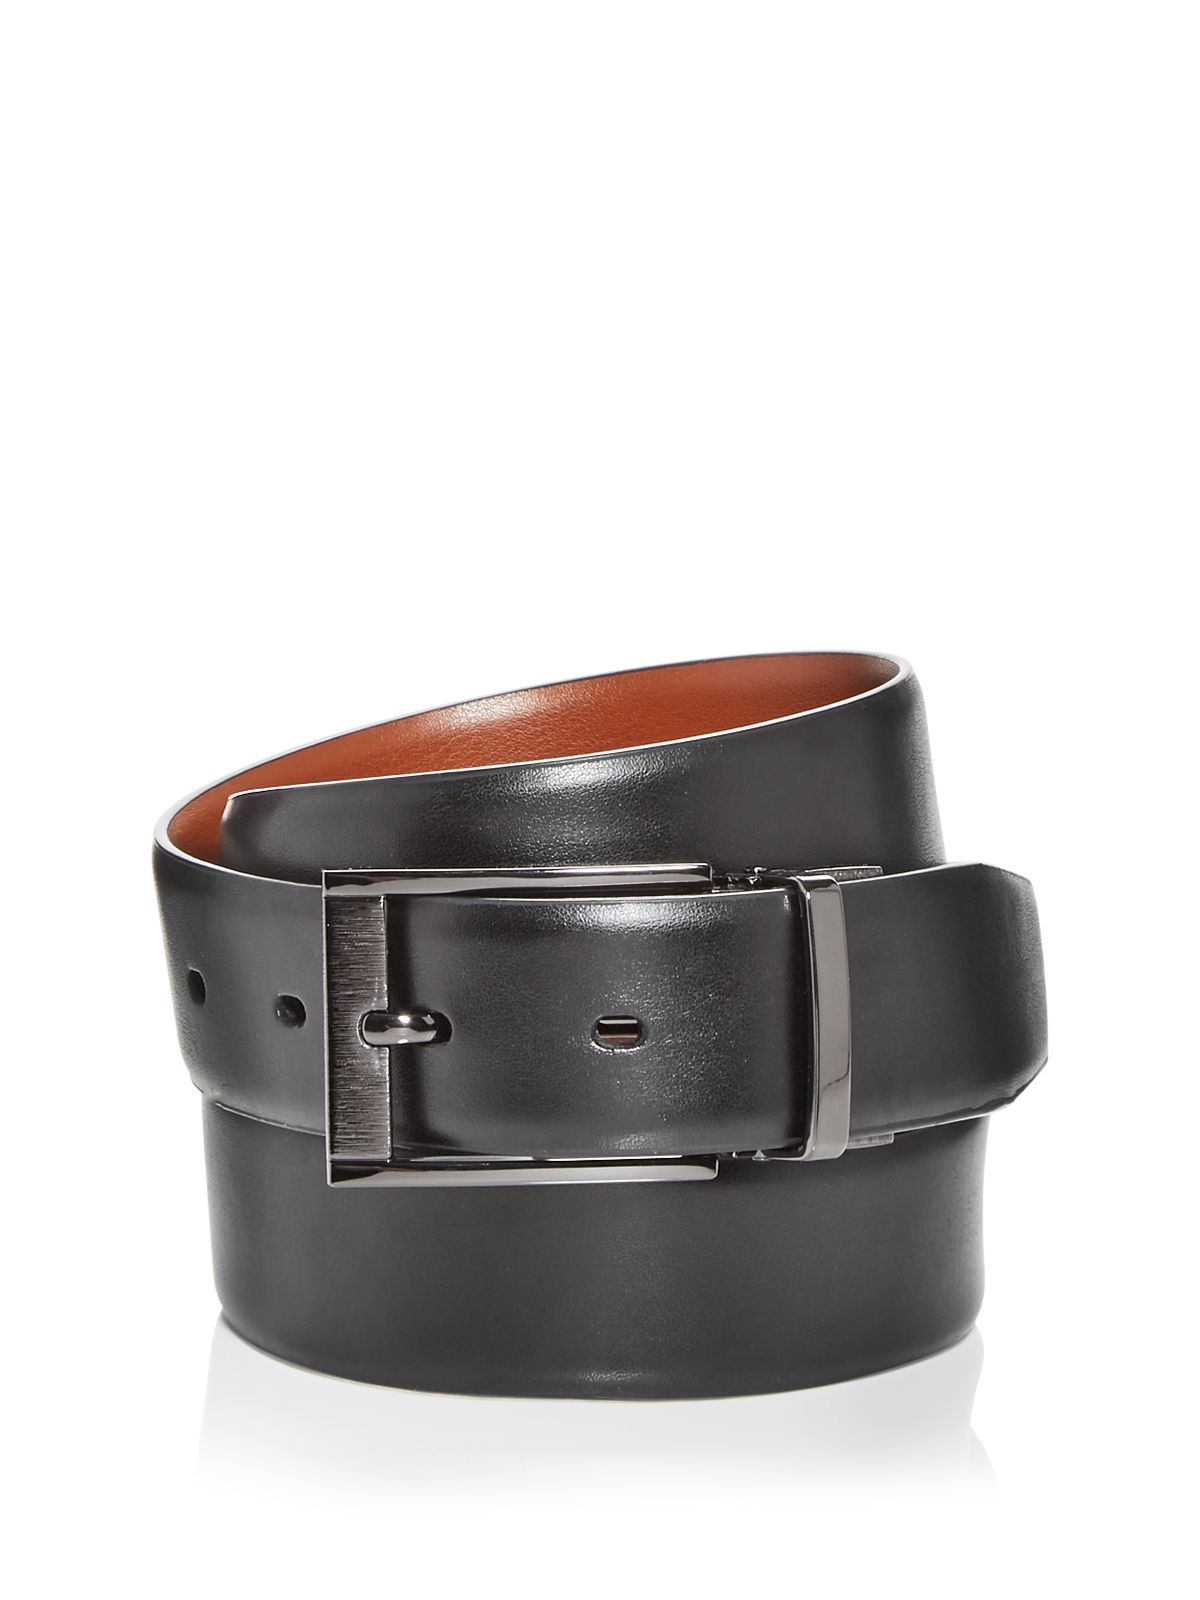 PERRY ELLIS PORTFOLIO Mens Black Plaque Buckle Adjustable Faux Leather Casual Belt 40